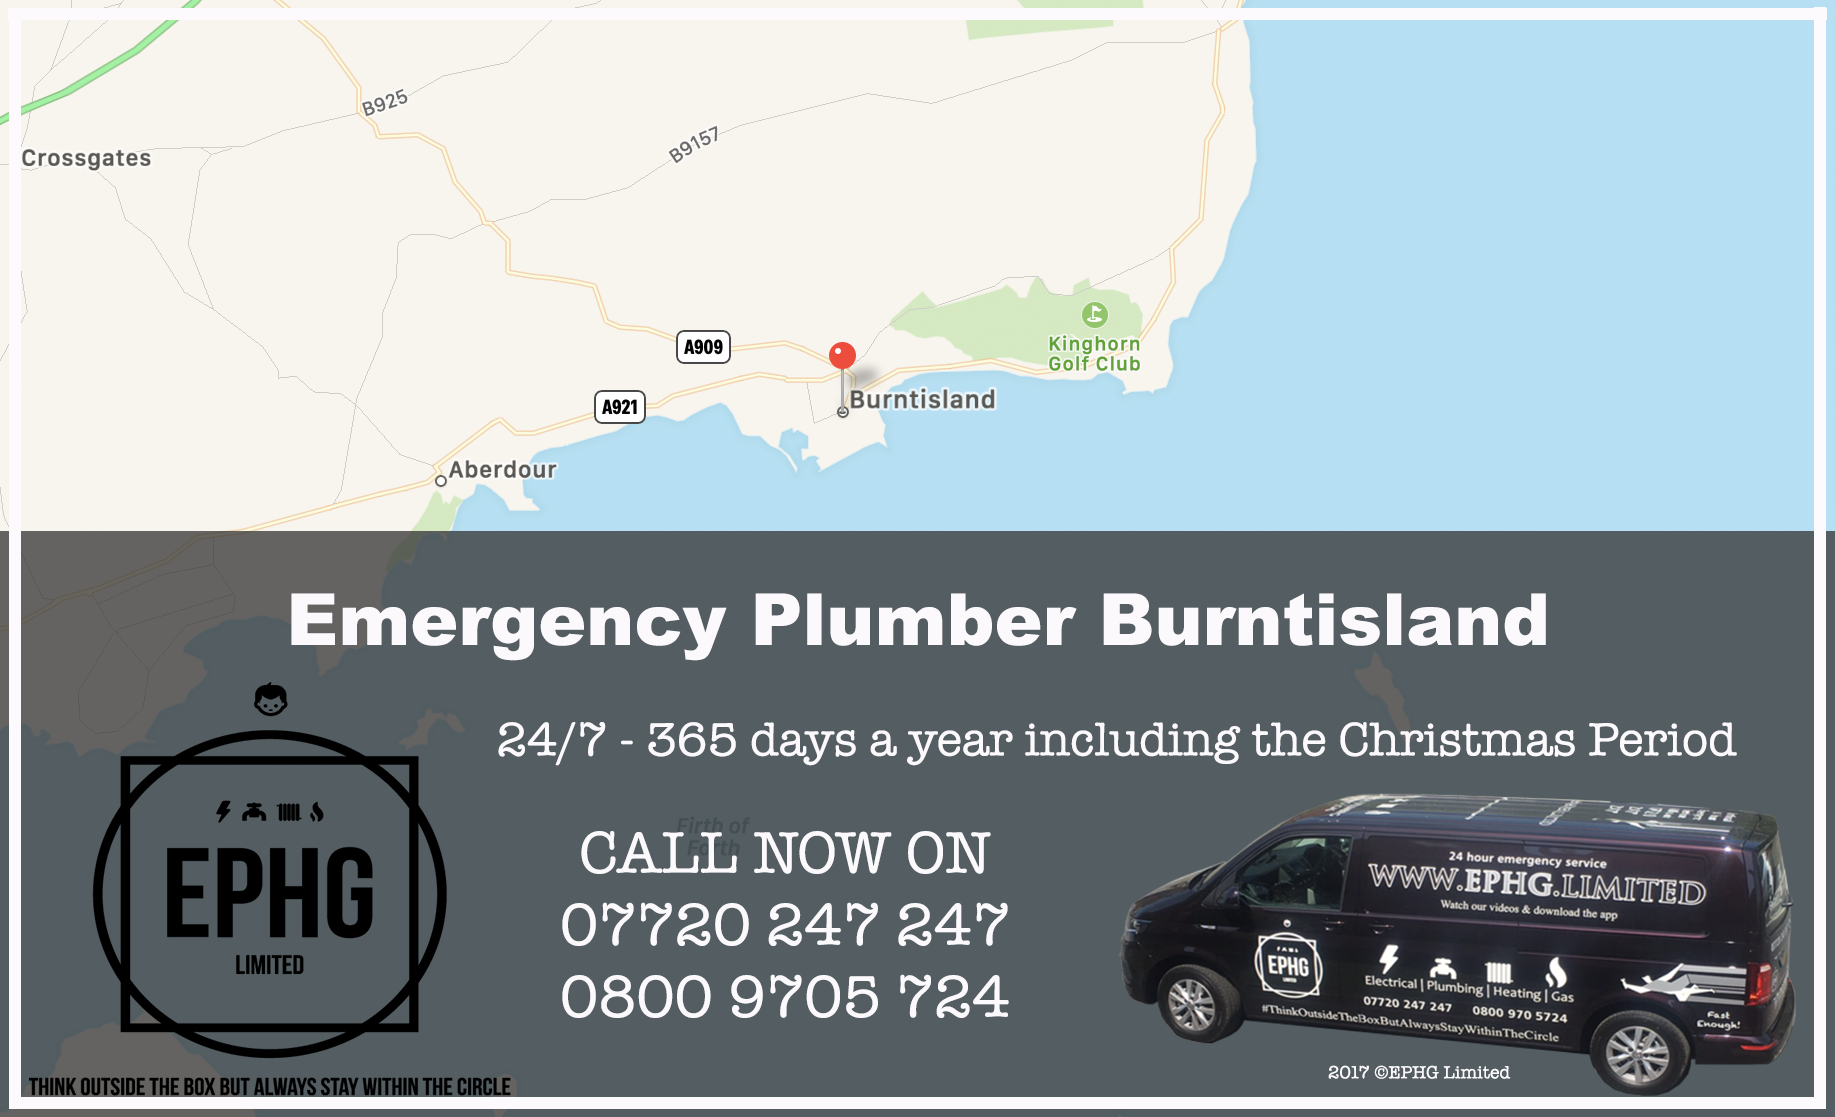 24 Hour Emergency Plumber Burntisland